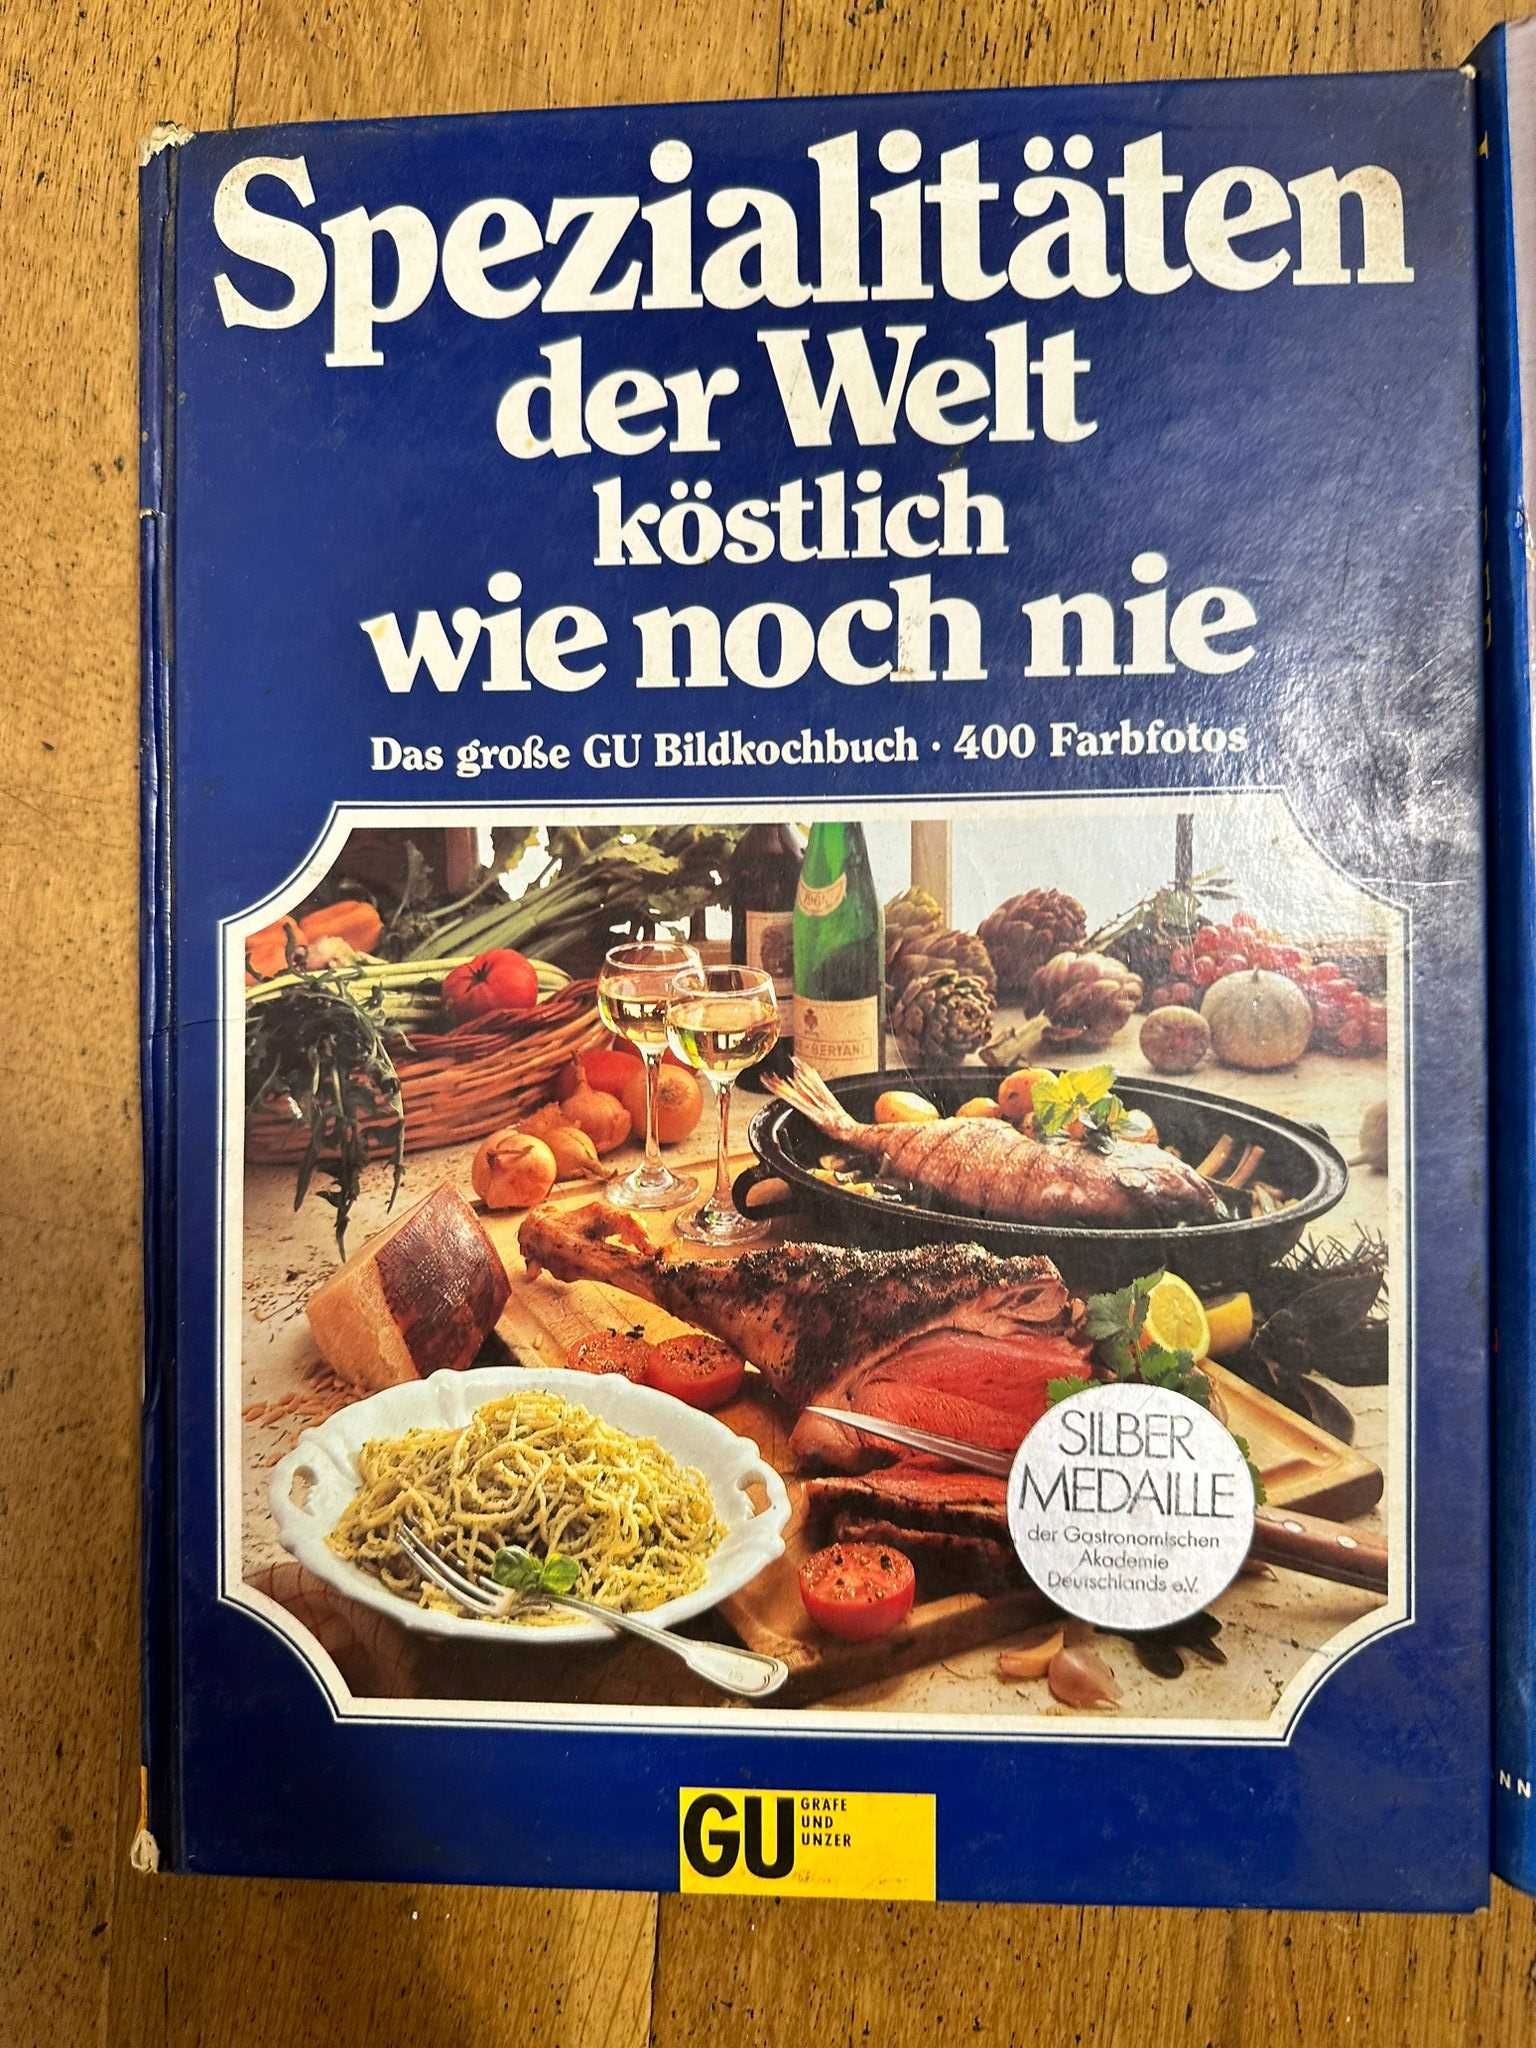 Carti vechi de retete culinare in limba germana